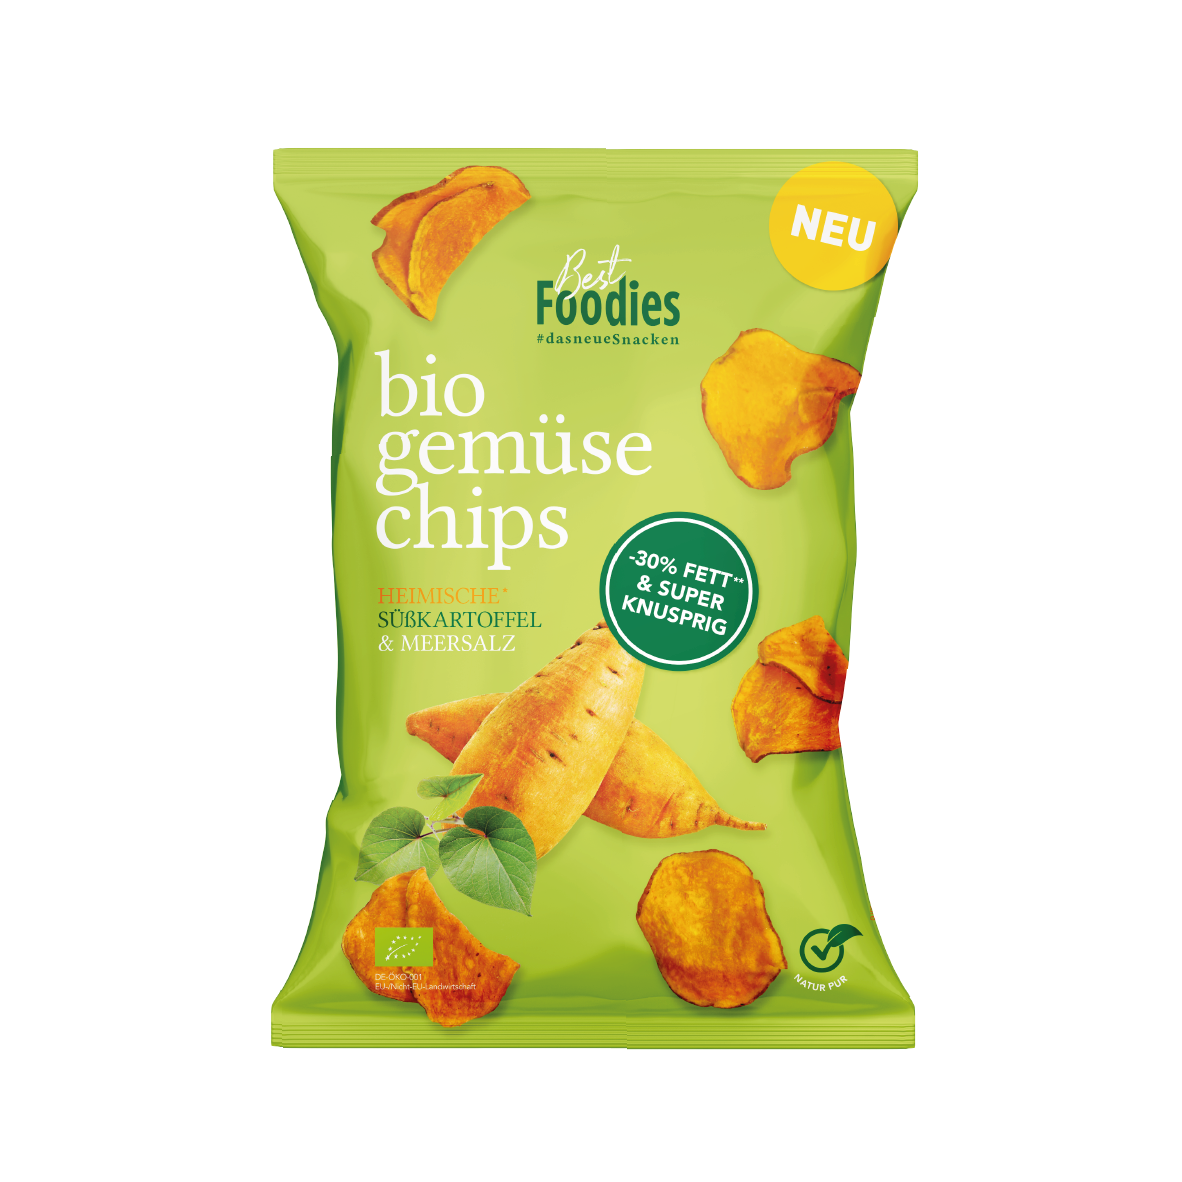 Bio Gemüse Chips - Heimische Süsskartoffel